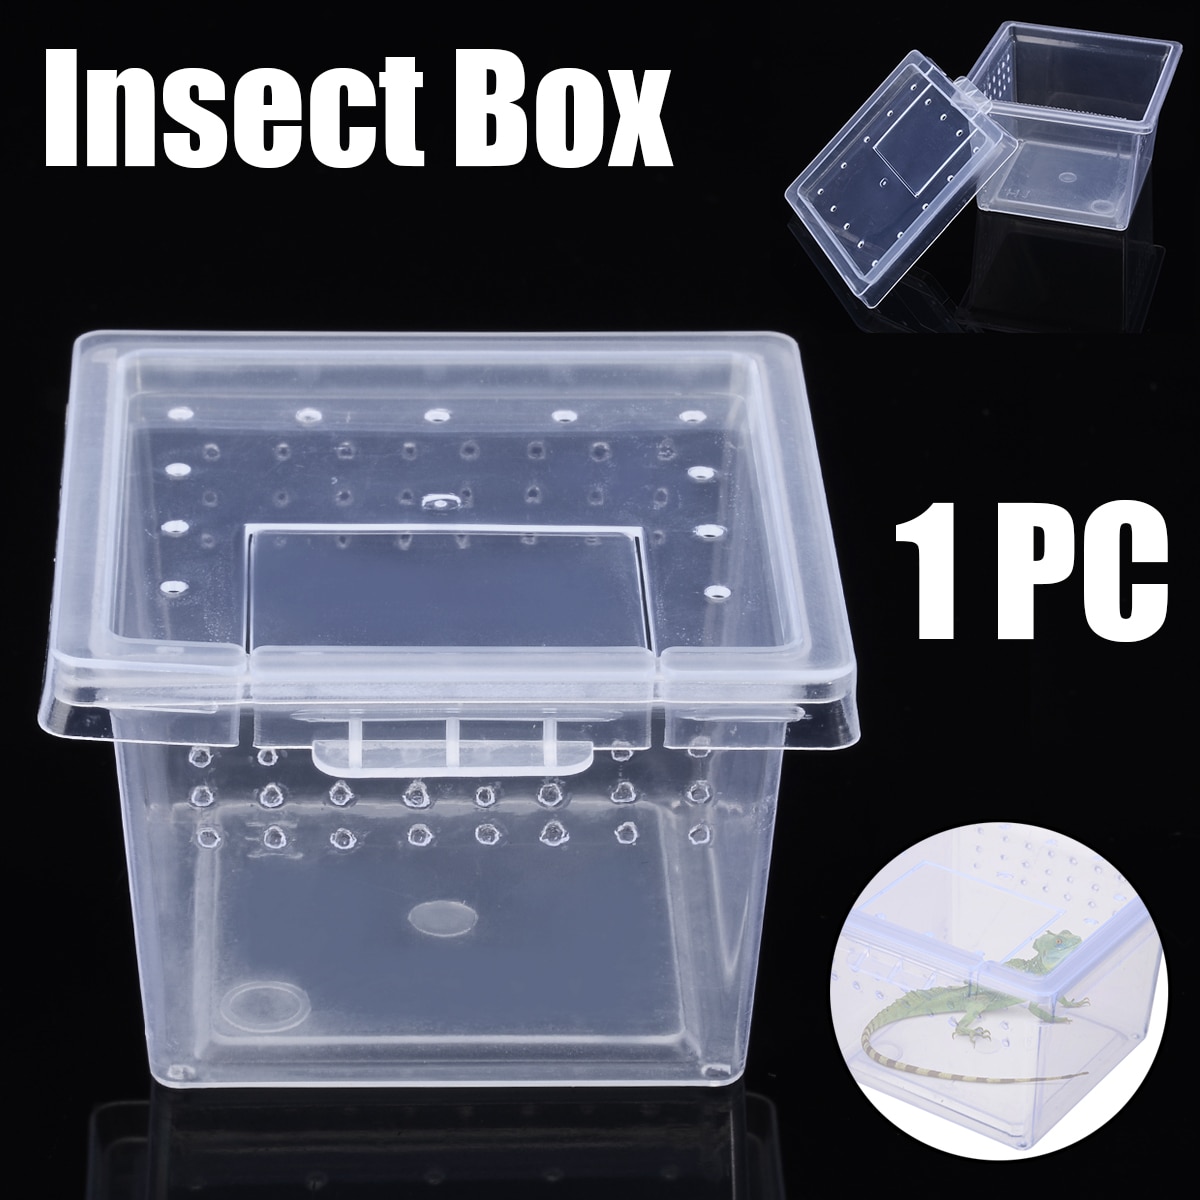 1pc plastik krybdyr levende kasse gennemsigtig krybdyr terrarium levested for skorpion edderkoppemyrer firben opdræt fodring sag